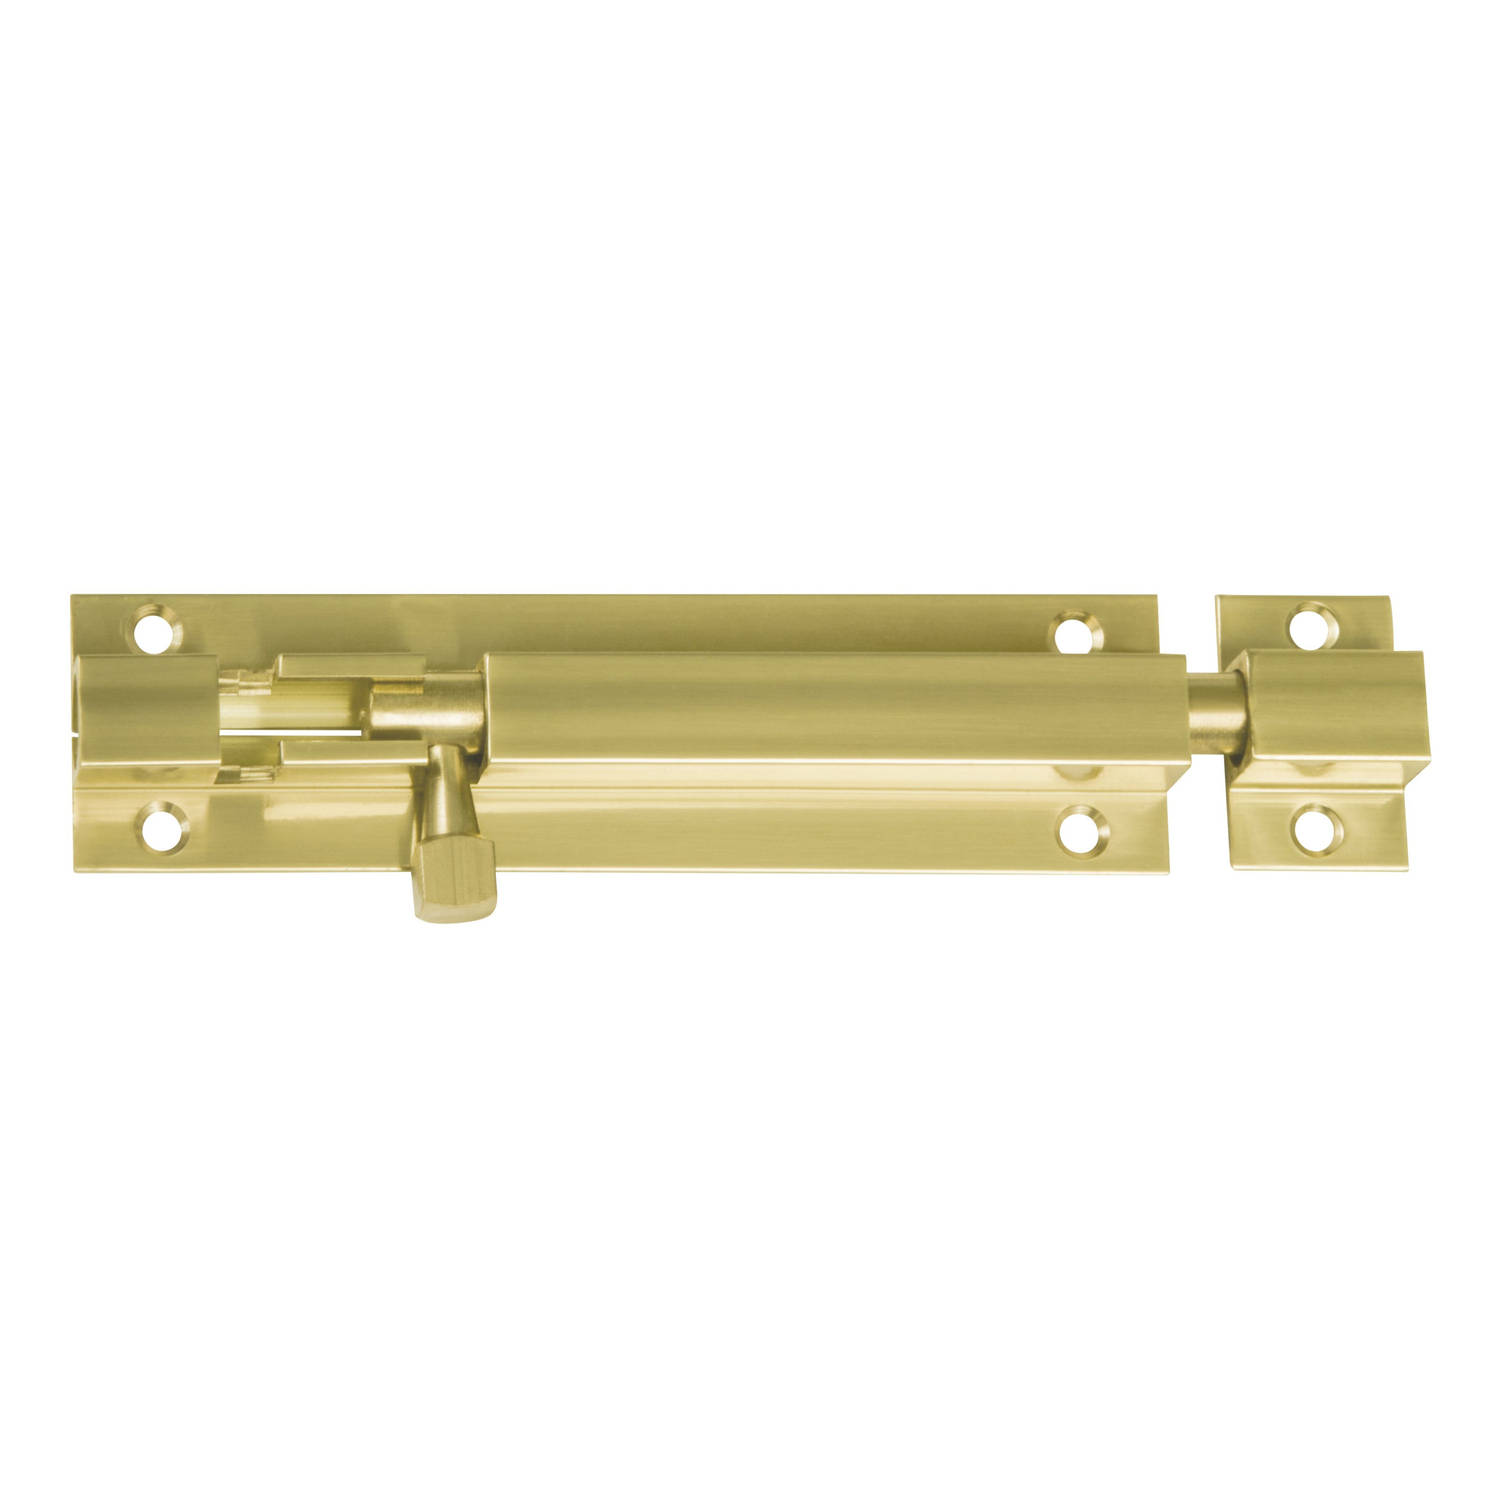 AMIG schuifslot/plaatgrendel - messing - 4 x 2.55 cm - koper/goudkleur - gepolijst - deur - poort